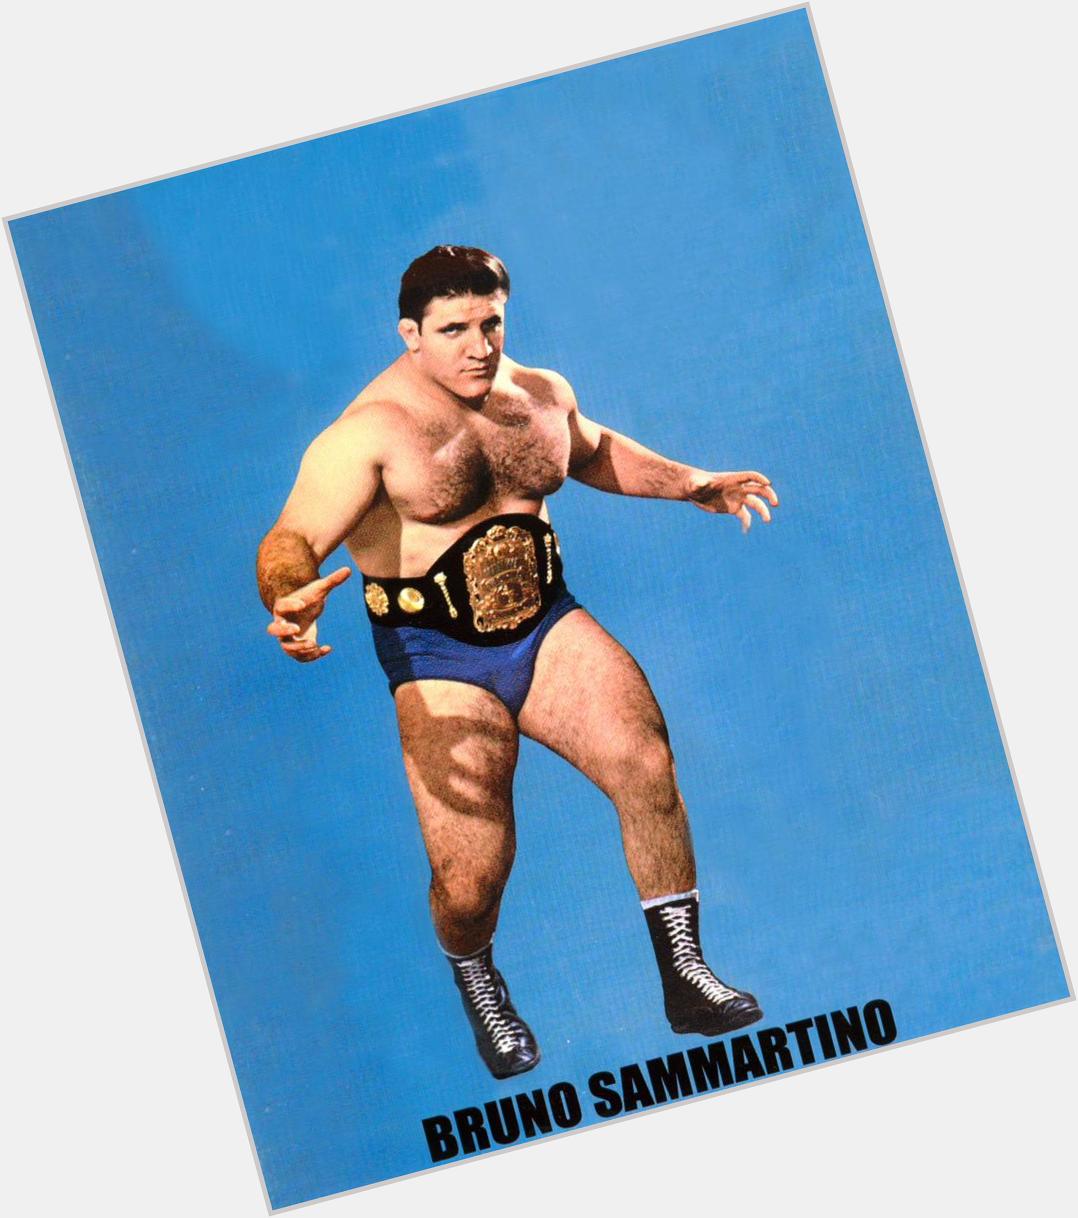 Huge Happy 80th  Birthday to wrestling legend Bruno Sammartino  